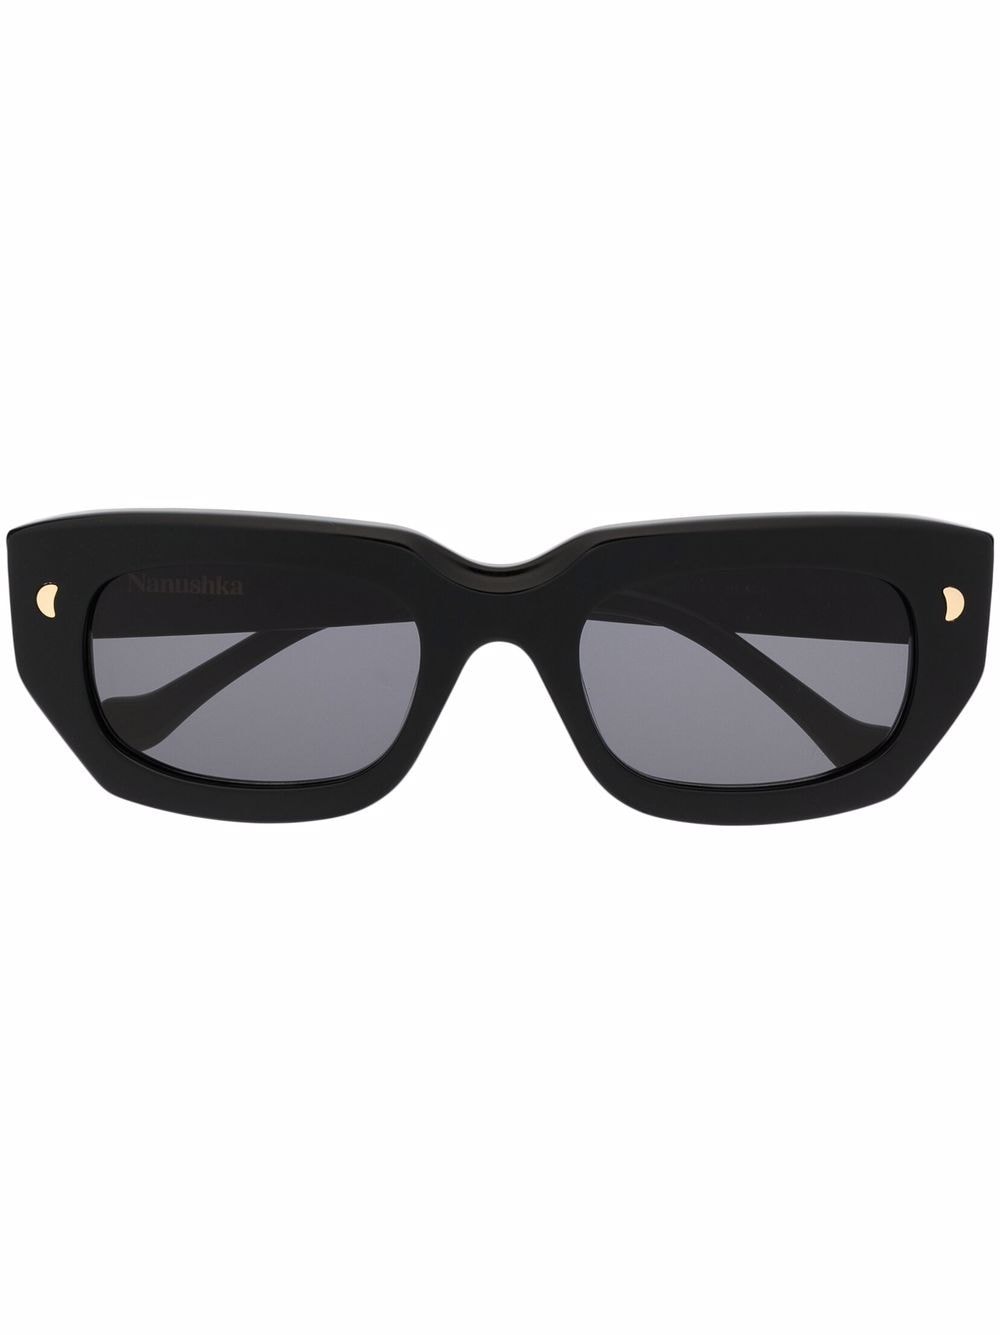 Nanushka polished cat-eye sunglasses - Black von Nanushka